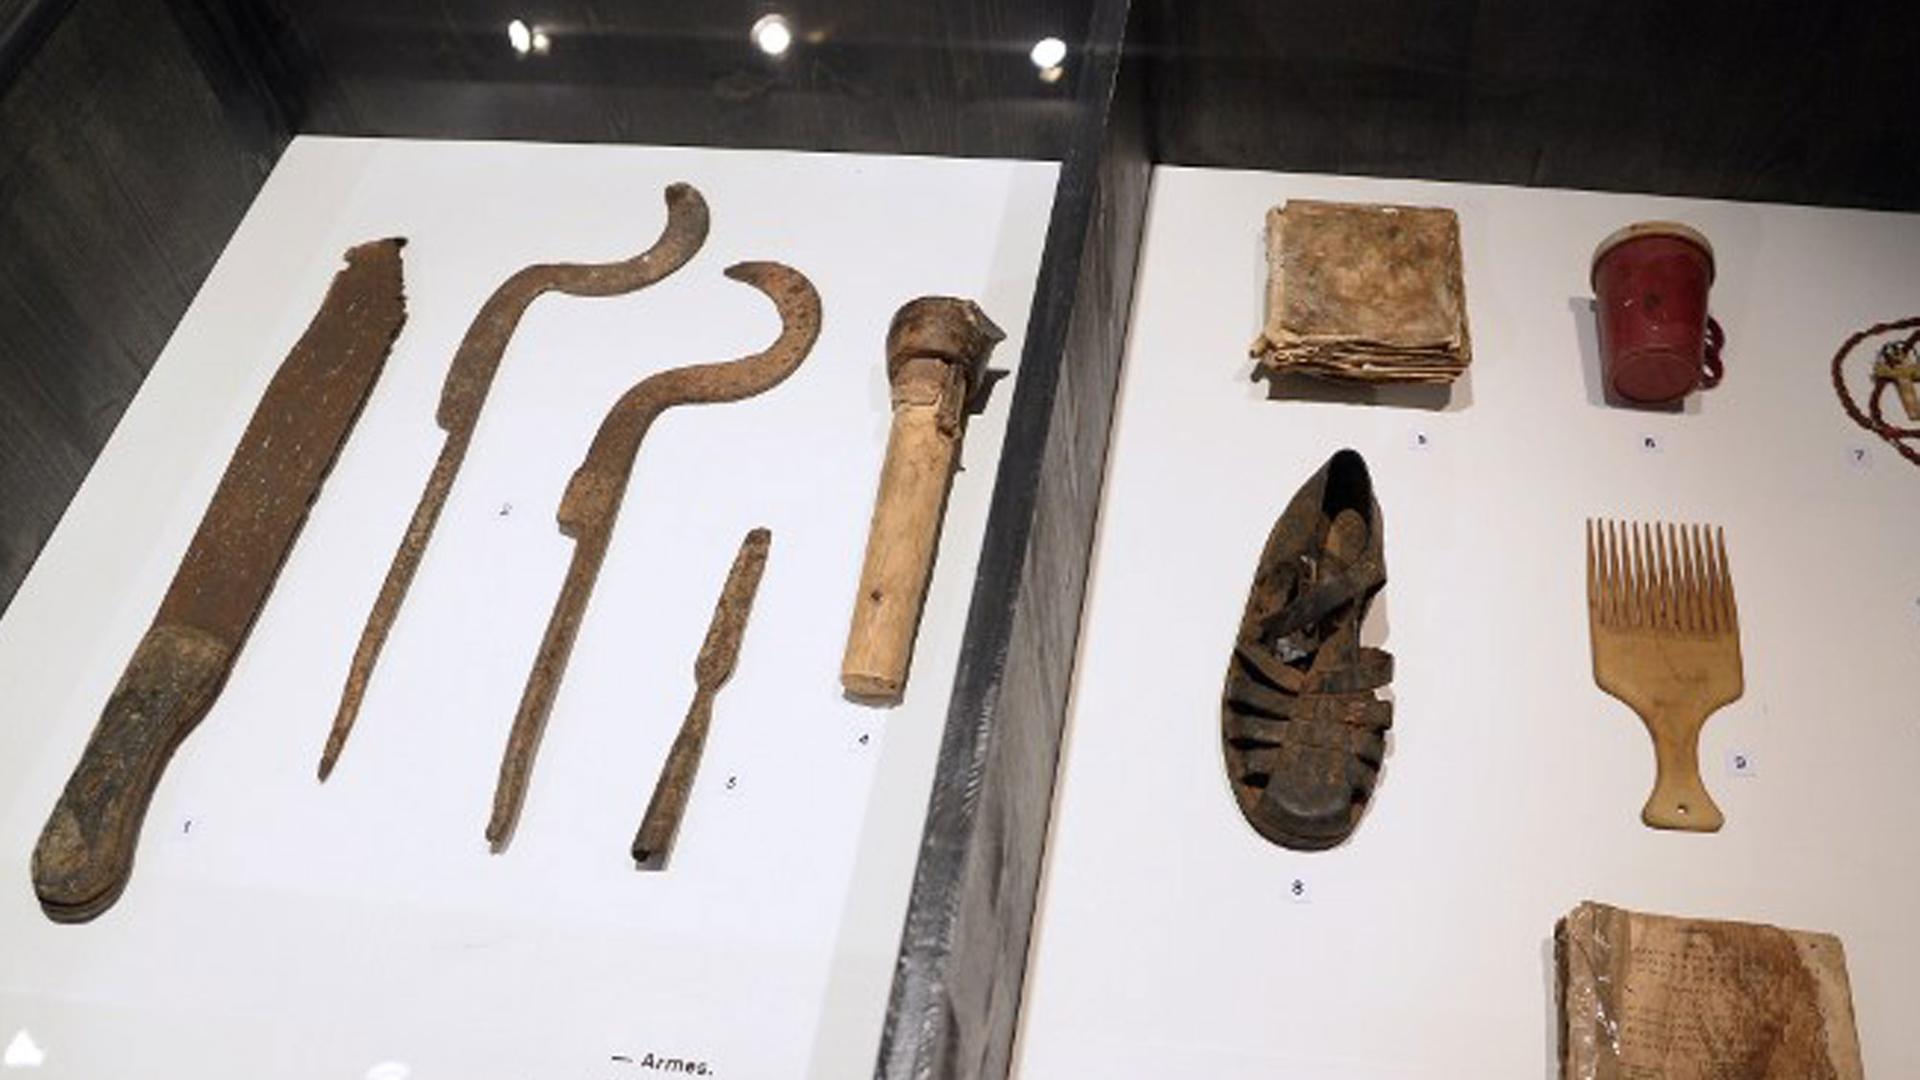 Eine Ausstellung in Paris zeigt auch verschiedene alltägliche Gegenstände wie Macheten und Messern, die in Ruanda zu Mordwaffen wurden.